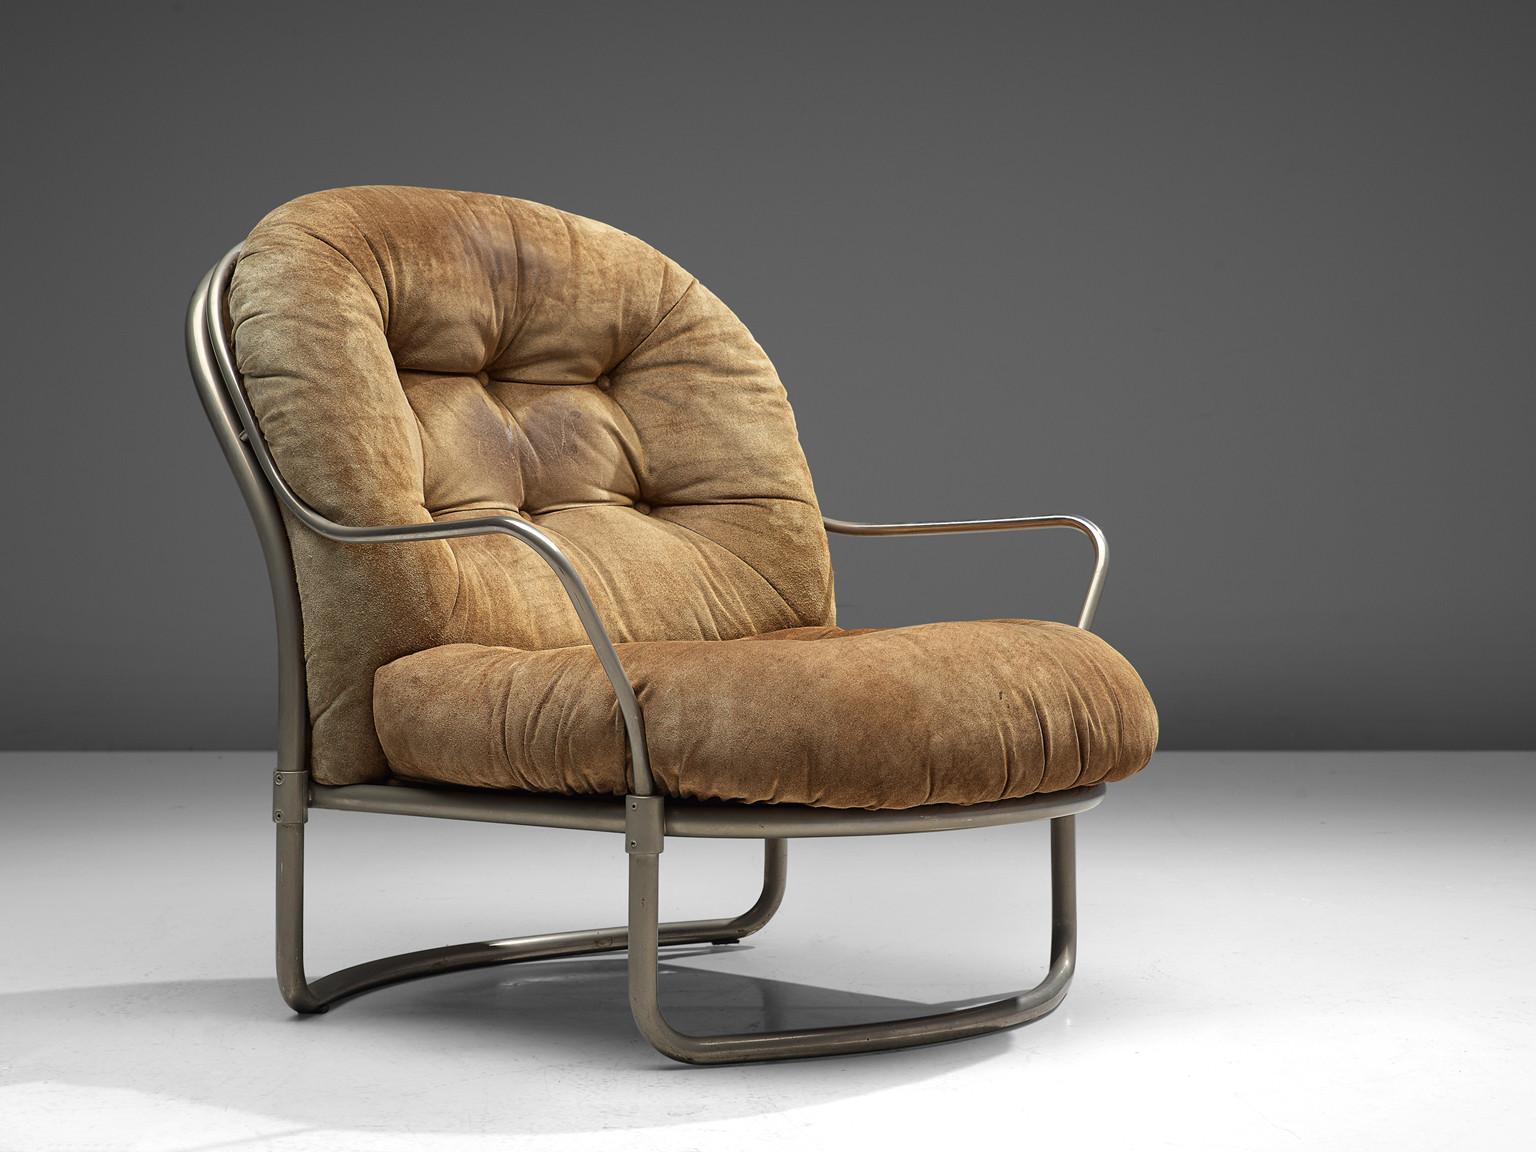 Carlo De Carli pour Cinova, chaise longue, modèle '915', acier nickelé, daim, Italie, 1969

Élégante chaise longue tubulaire conçue par Carlo de Carli (1910-1999) dans les années soixante et fabriquée par Cinova en 1969. Une construction tubulaire